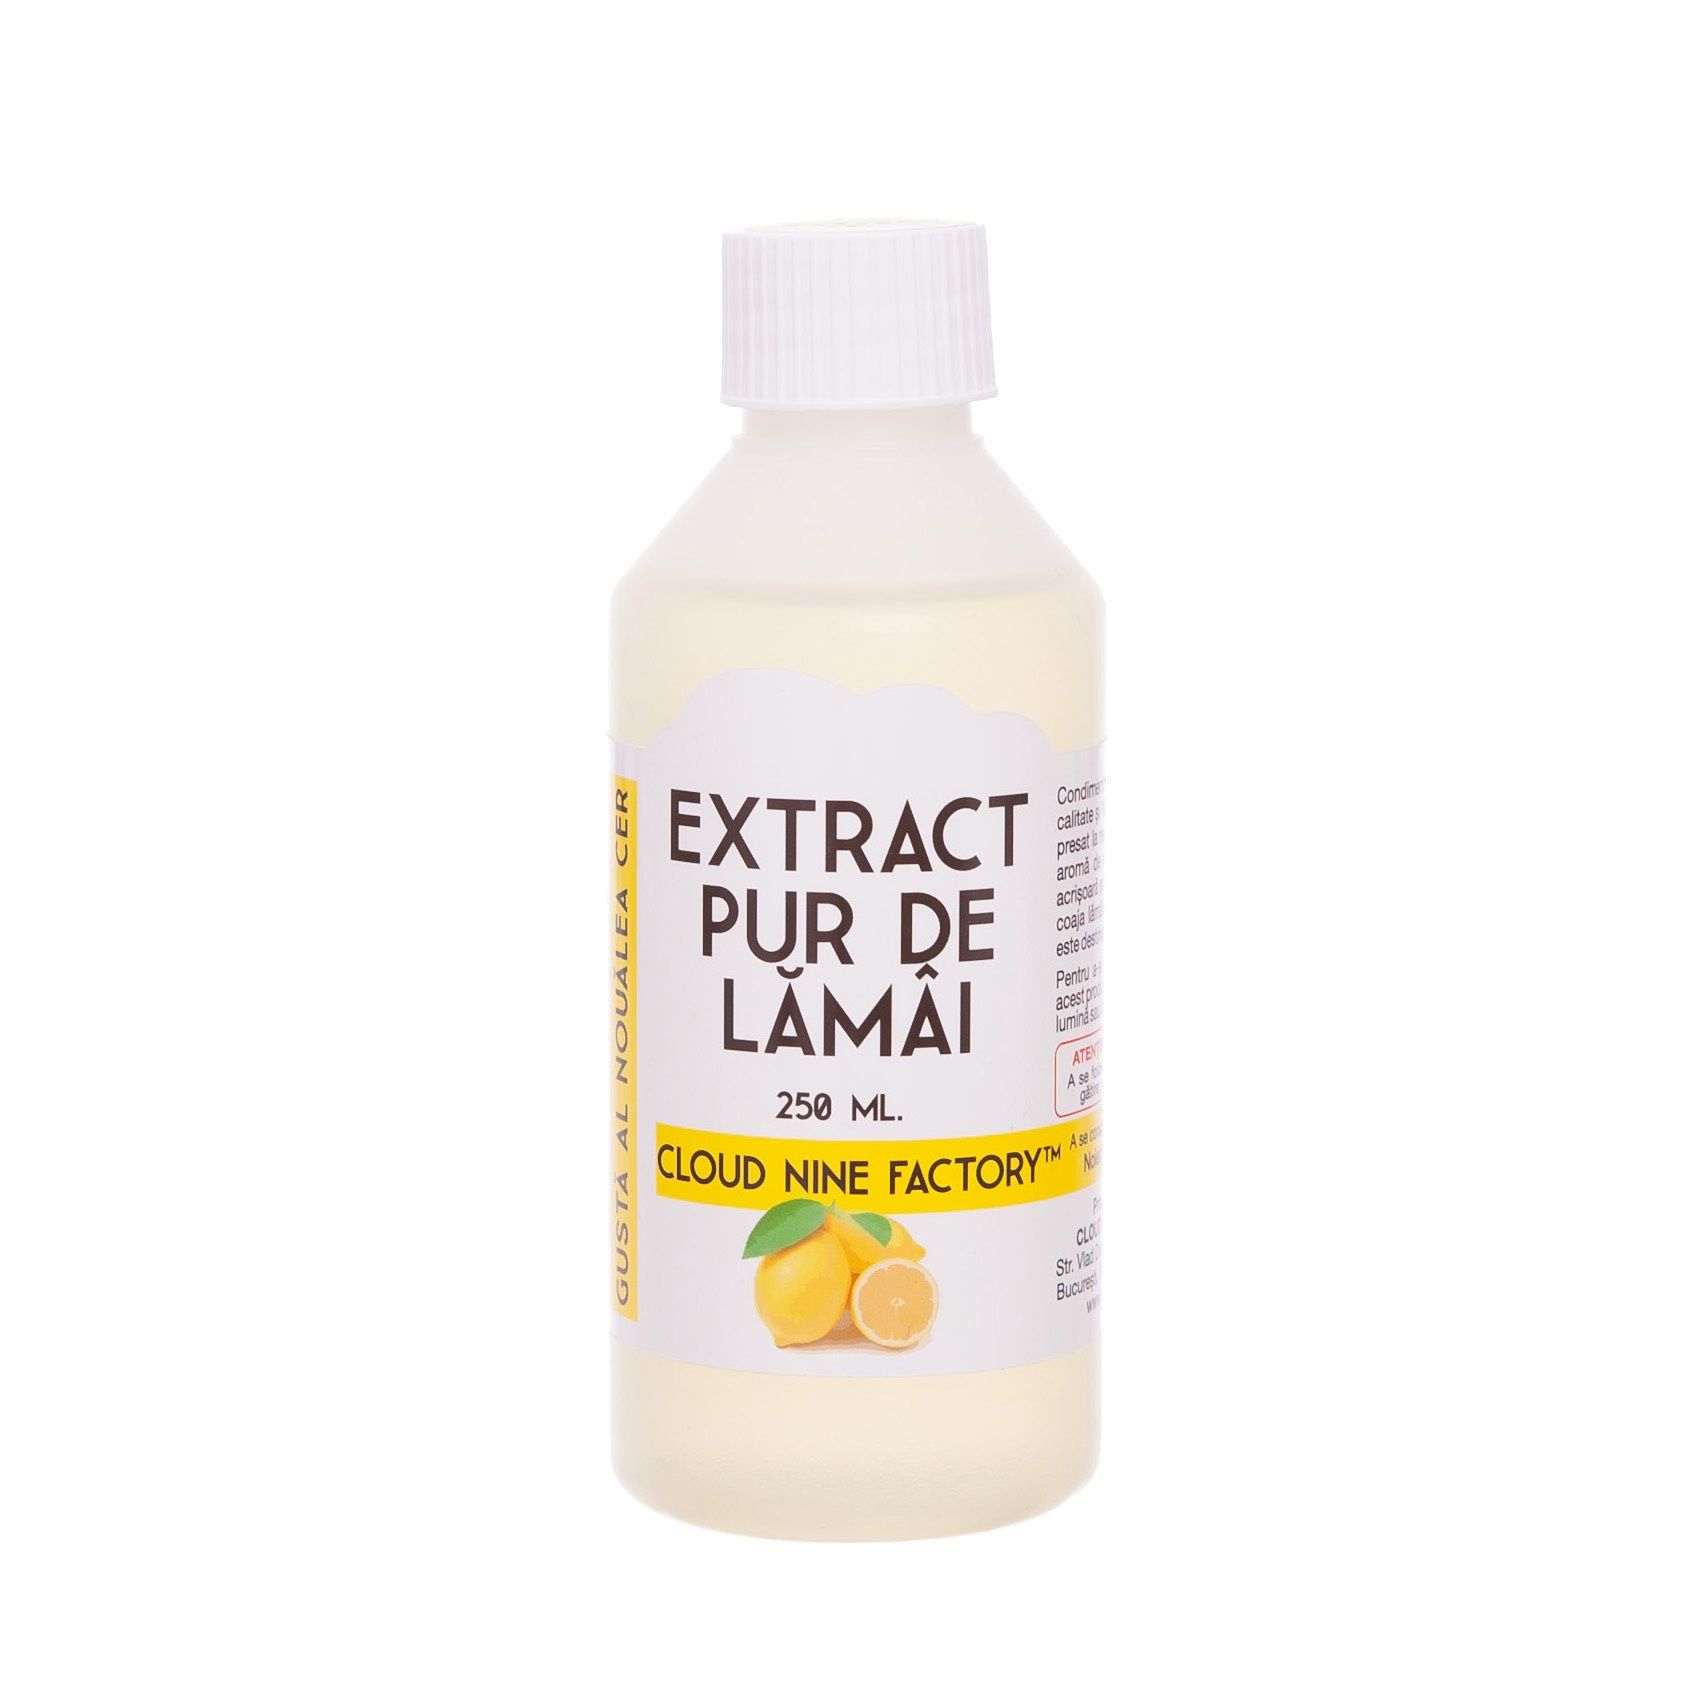 Extract Pur de Lămâi (250 ml.) extract pur de lămâi (250 ml.) - IMG 2625 - Extract Pur de Lămâi (250 ml.) Extract Pur de Lămâi - IMG 2625 - Extract Pur de Lămâi